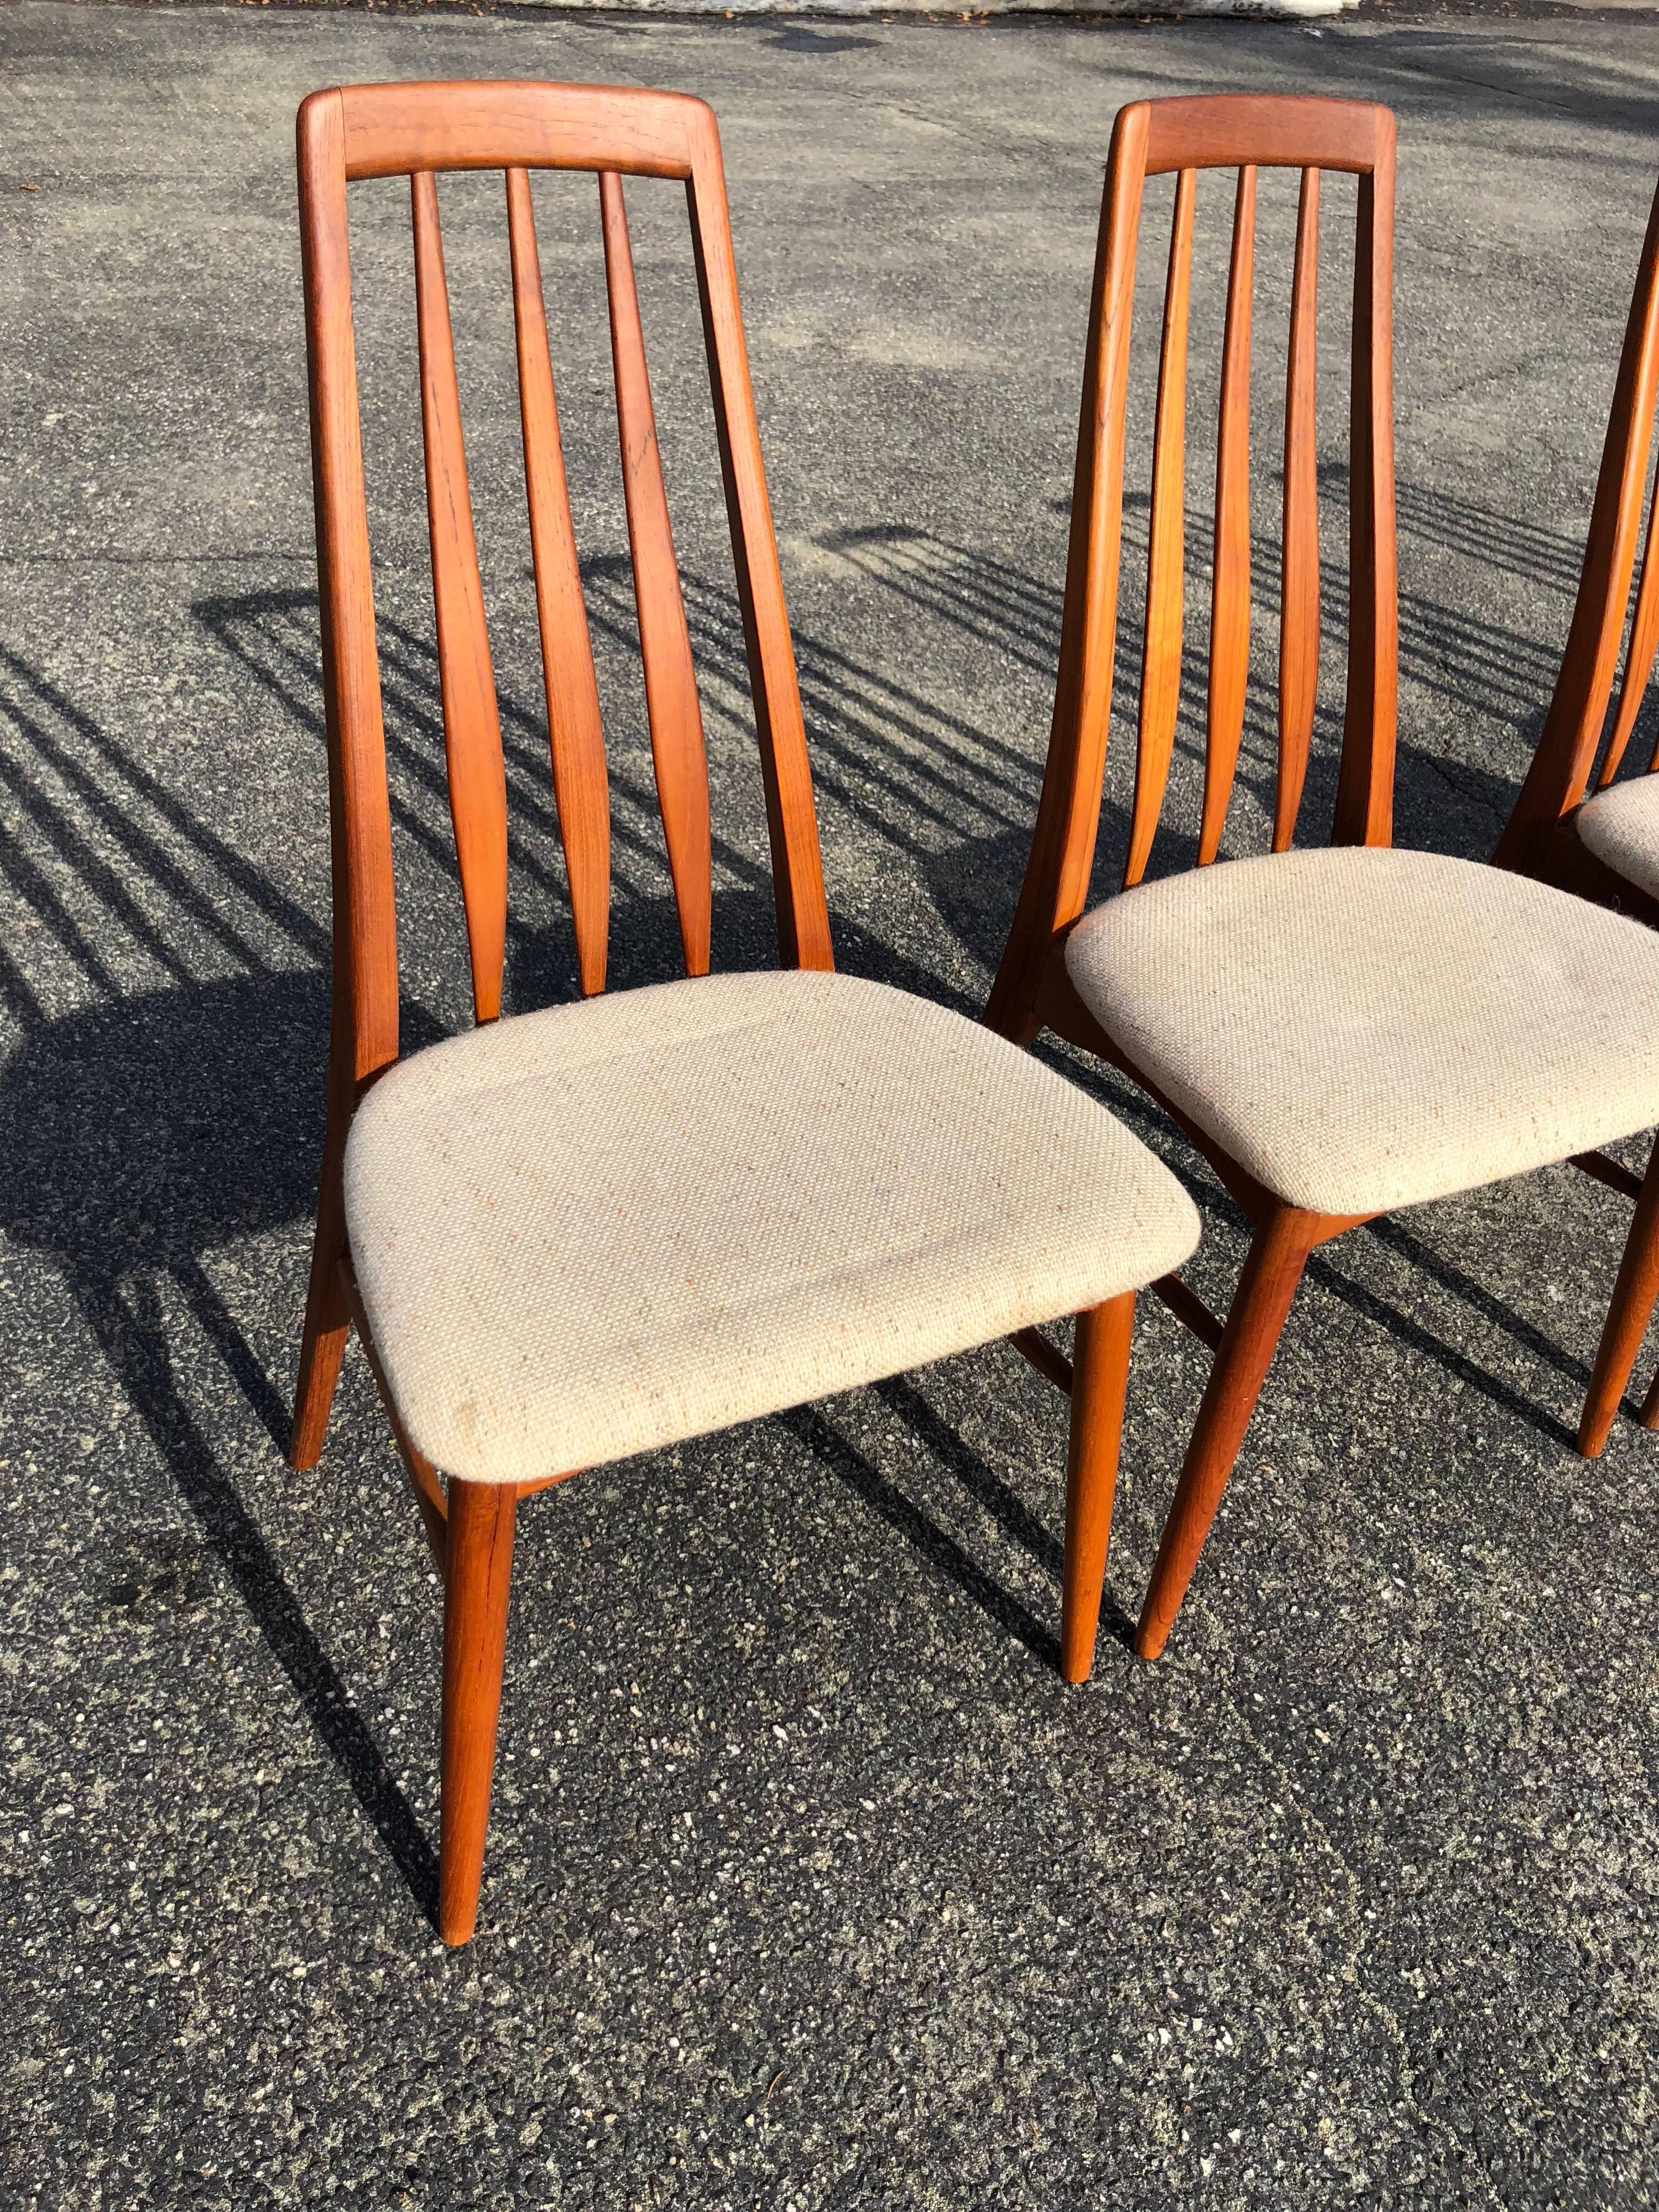 Set of Six Teak “Eva” Chair by Niels Koefoed for Hornslet Mobelfabrik in Teak 1